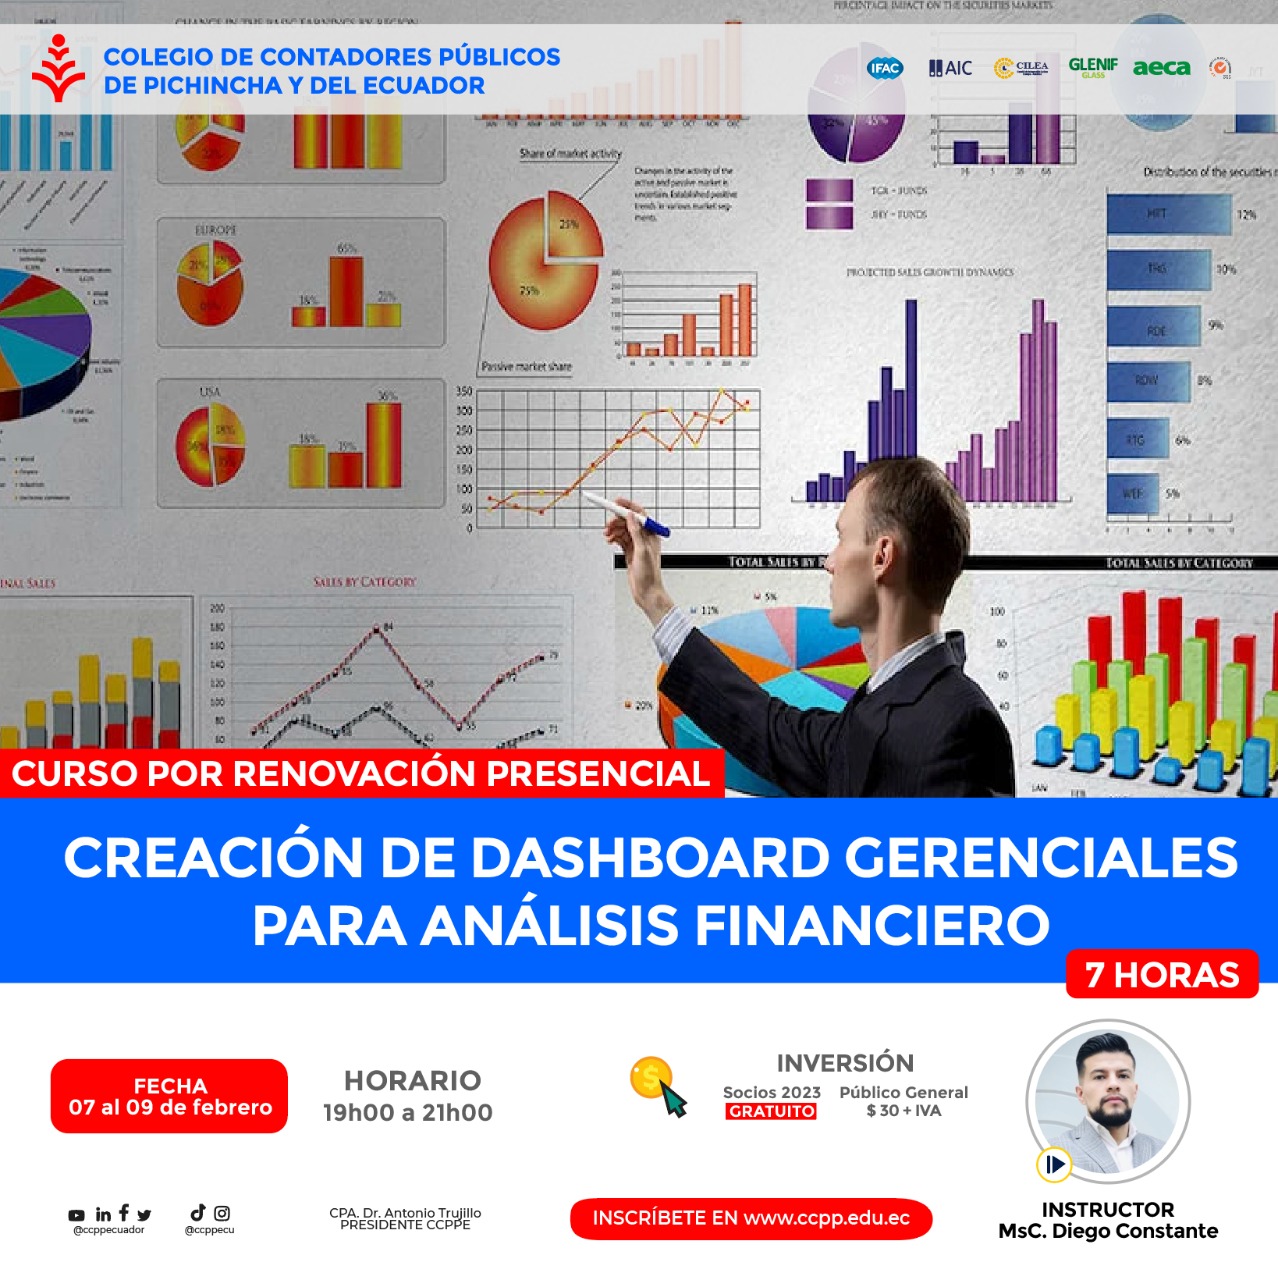 CREACIÓN DE DASHBOARDS GERENCIALES PARA ANÁLISIS FINANCIERO - 07 al 09 FEBRERO 2023